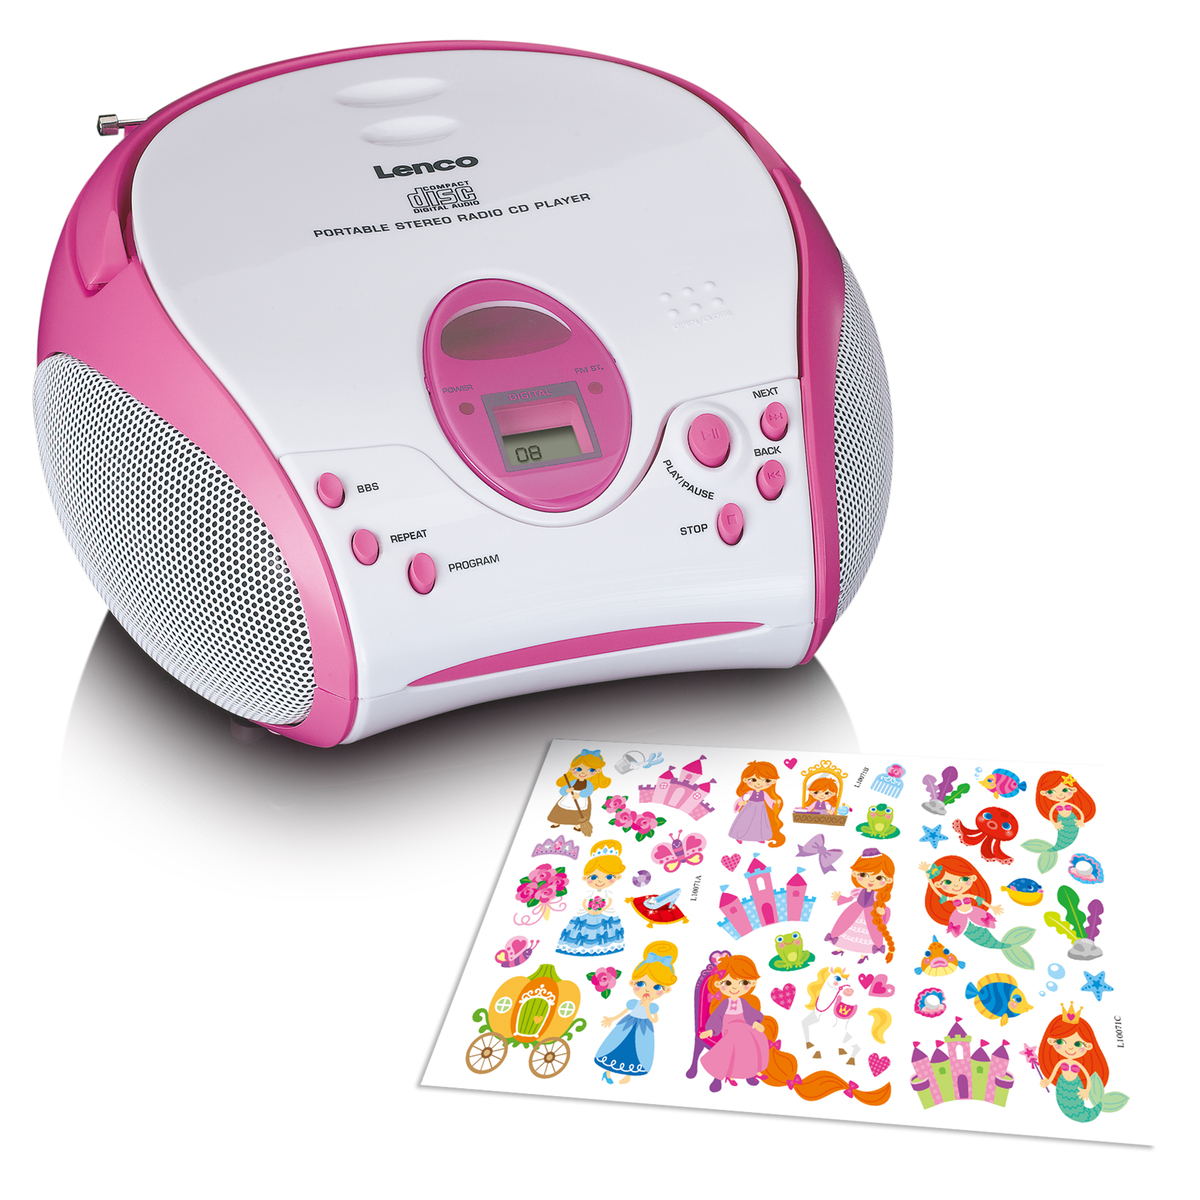 LENCO Boombox mit CD player, FM radio und Stickern - best4you